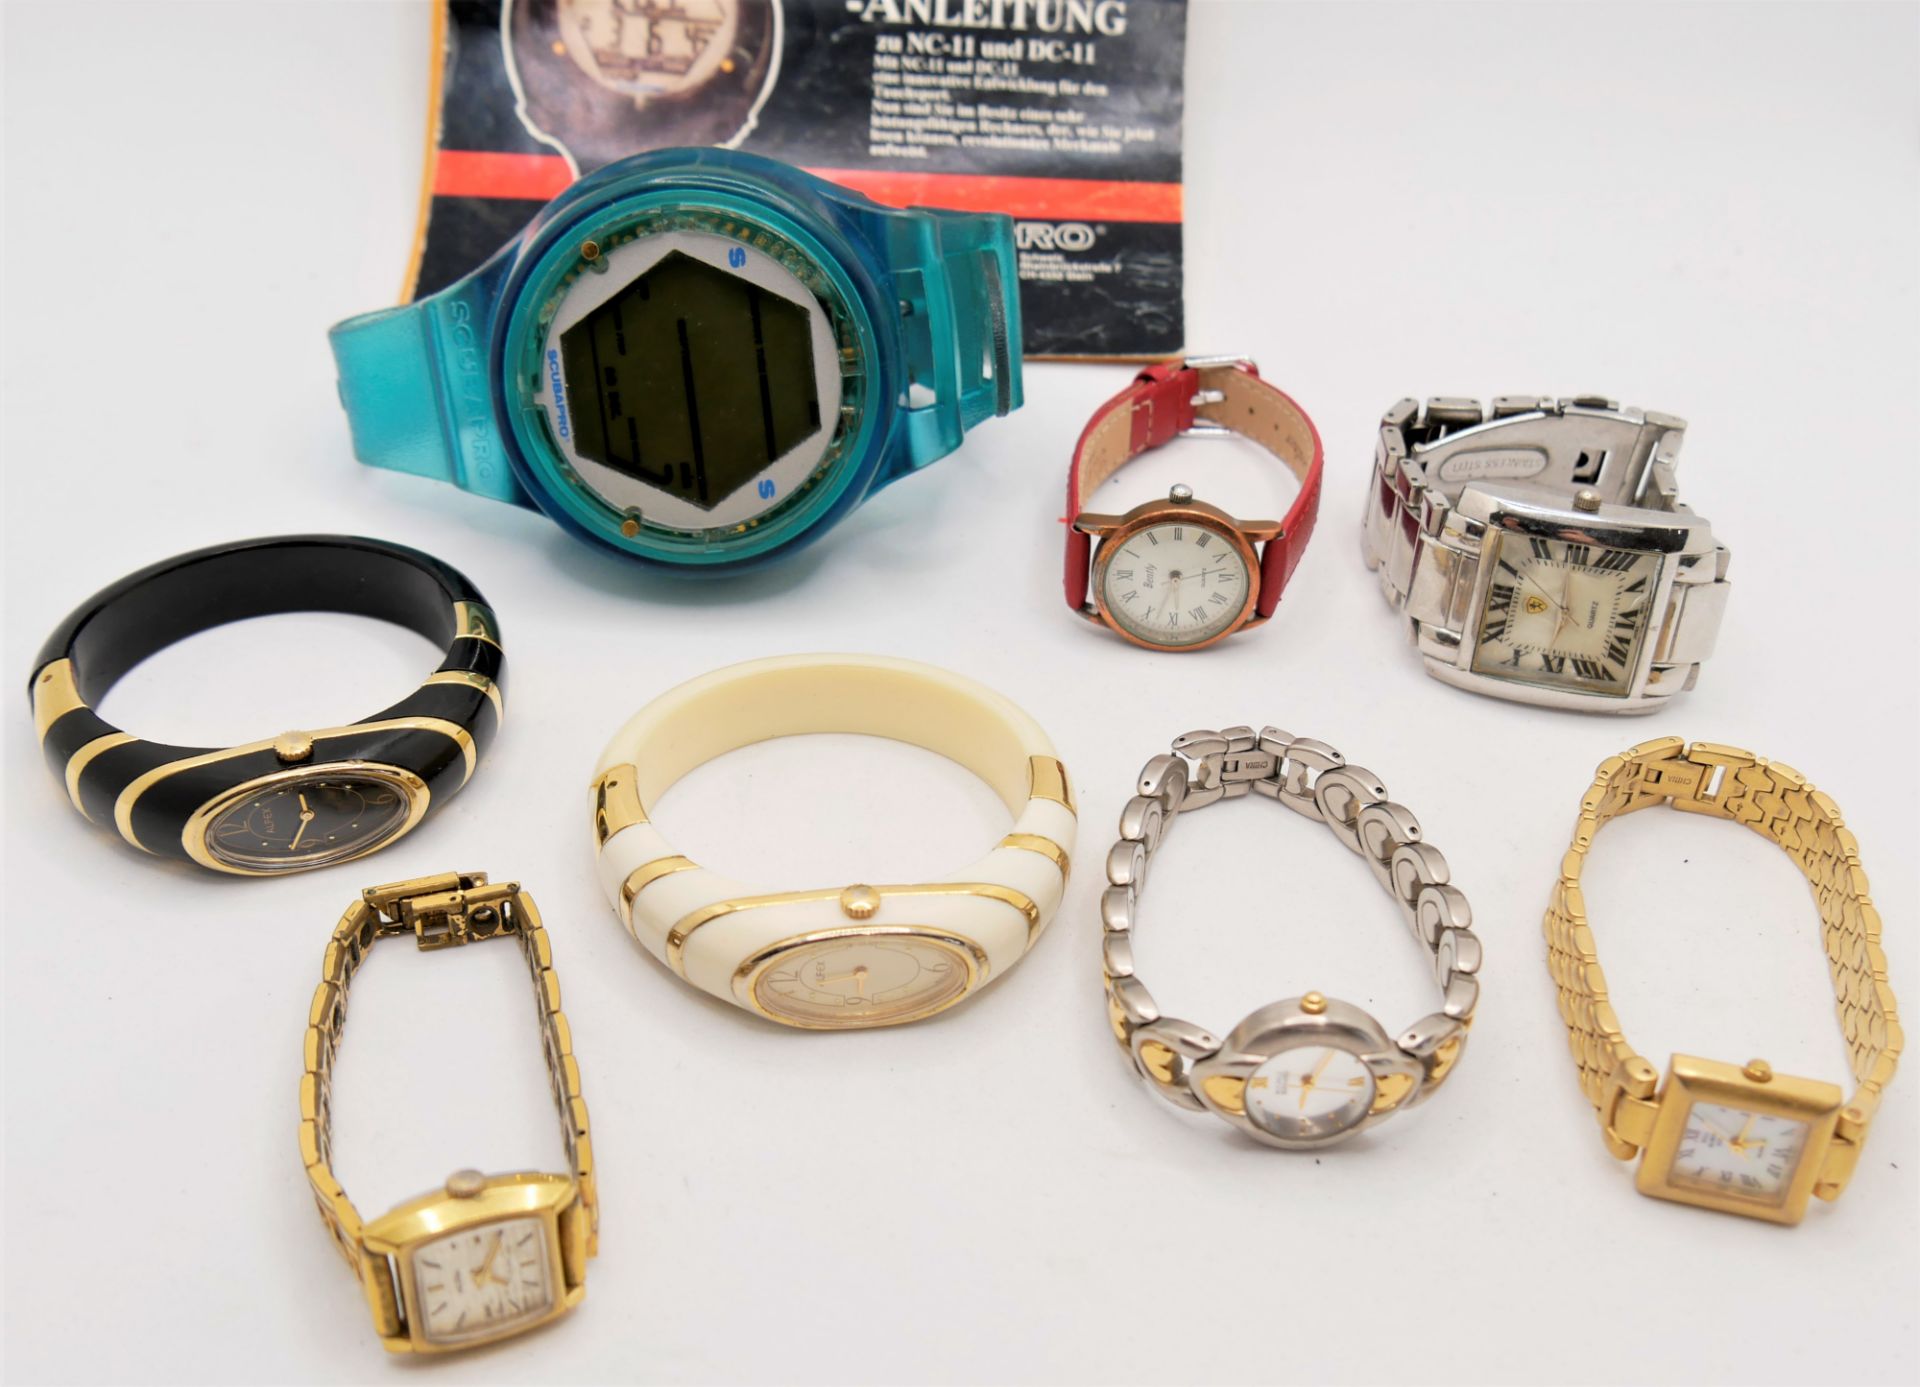 Lot Herren- und Damenarmbanduhren, dabei ausgefallene Stücke sowie 1 Taucheruhr.